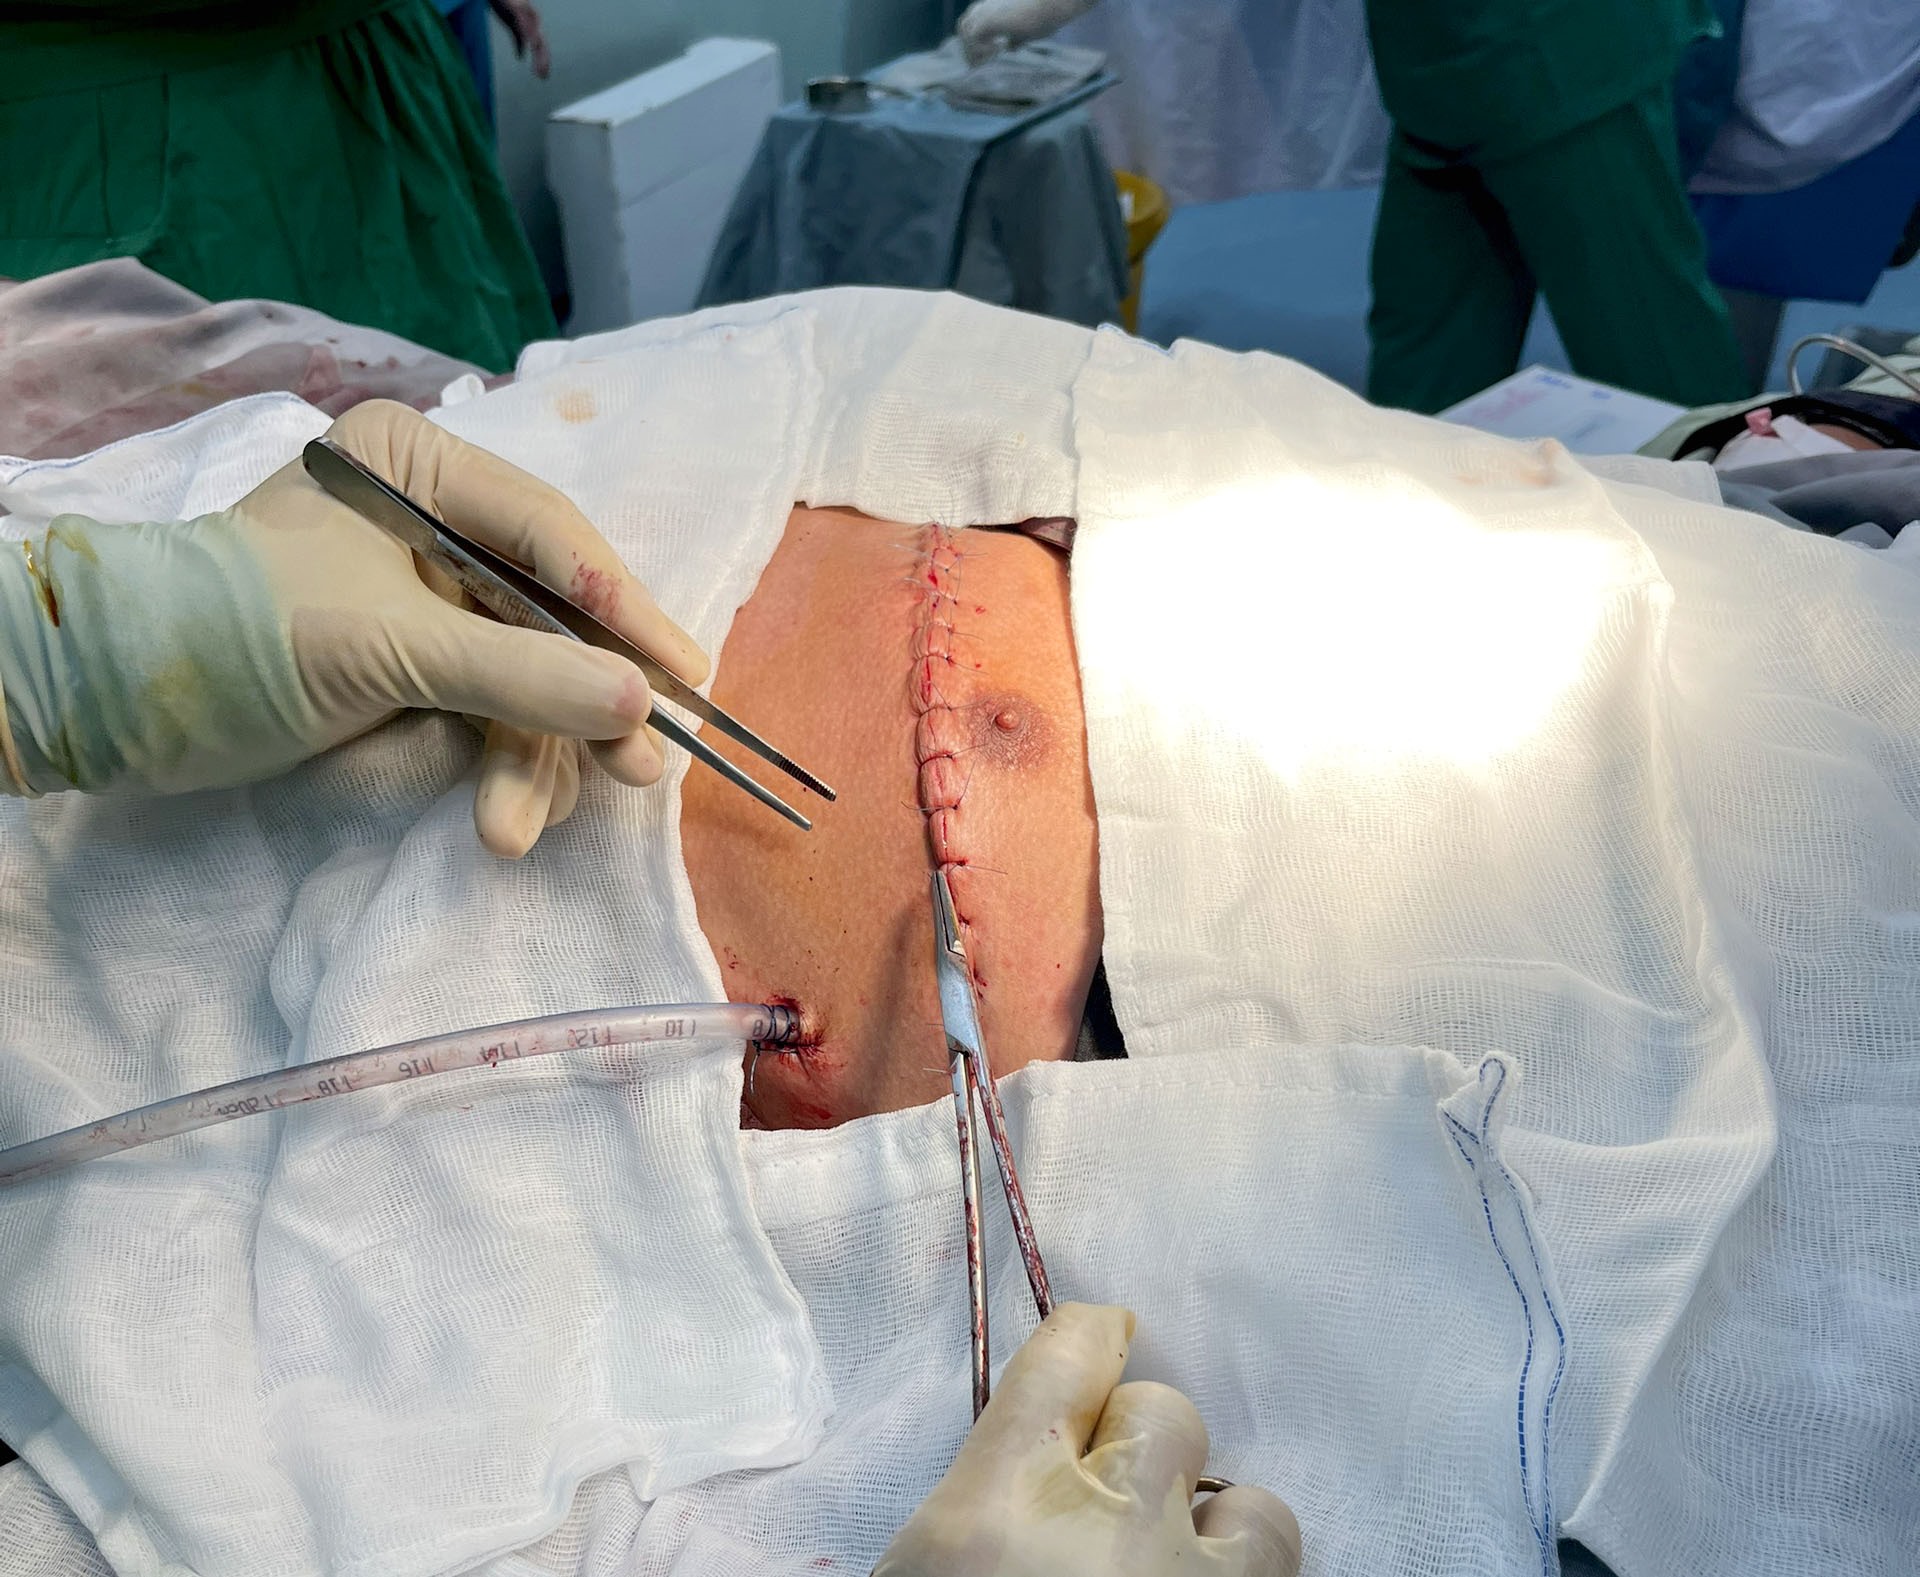 Ê kíp thầy thuốc đã cấp cứu, phẫu thuật và gây mê hồi sức thành công, cứu sống bệnh nhân Trần Văn Ph, bị thanh kim loại đâm vào tim. Ảnh: Bệnh viện cung cấp.